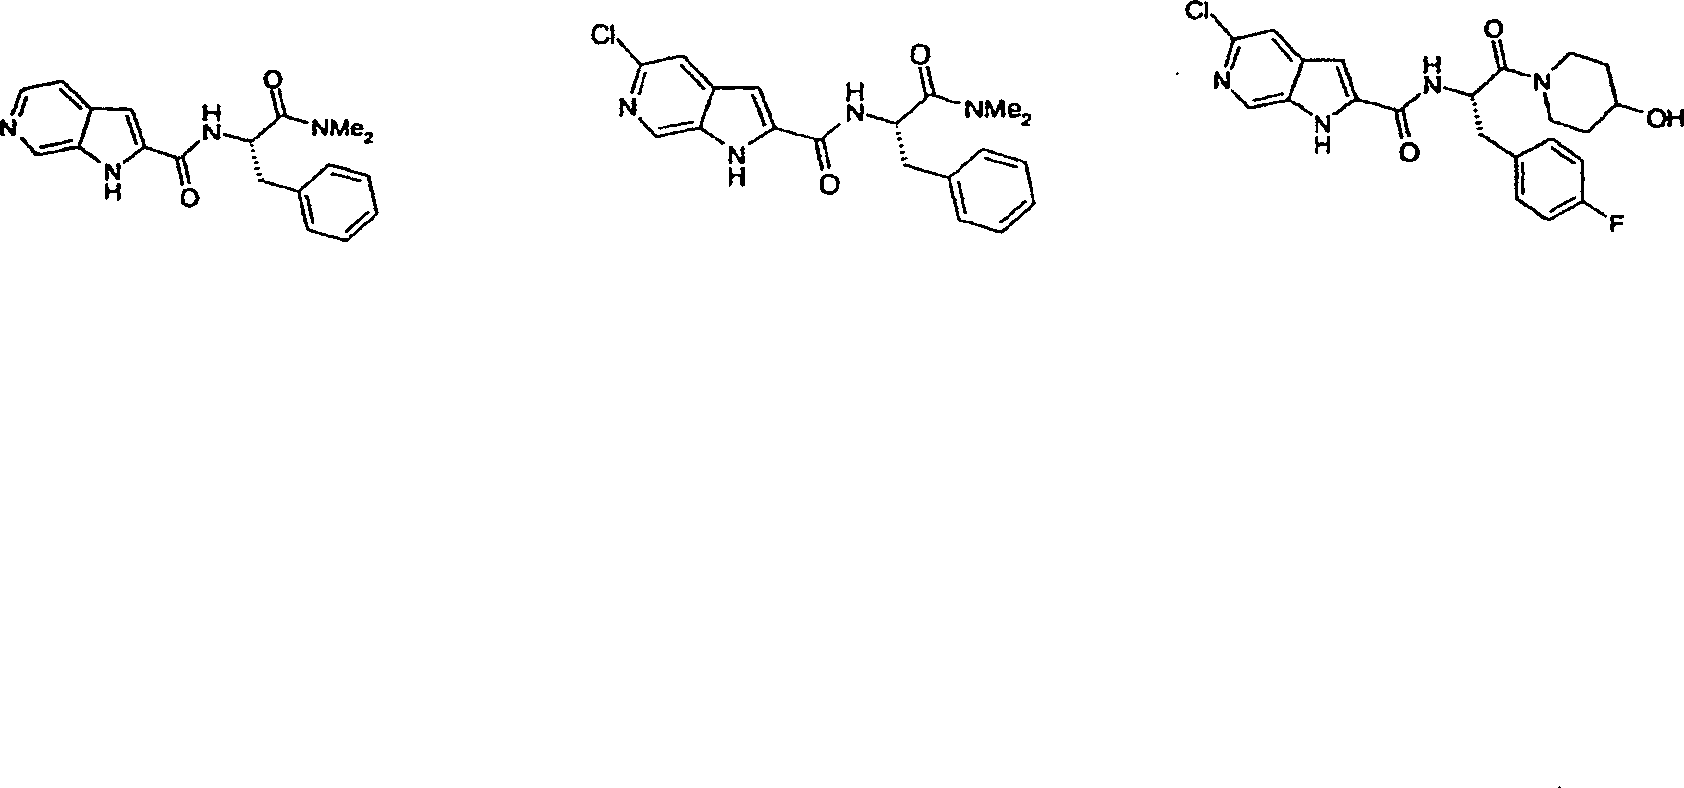 Pyrrolopyridine-2-carboxylic acid amide inhibitors of glycogen phoshorylase